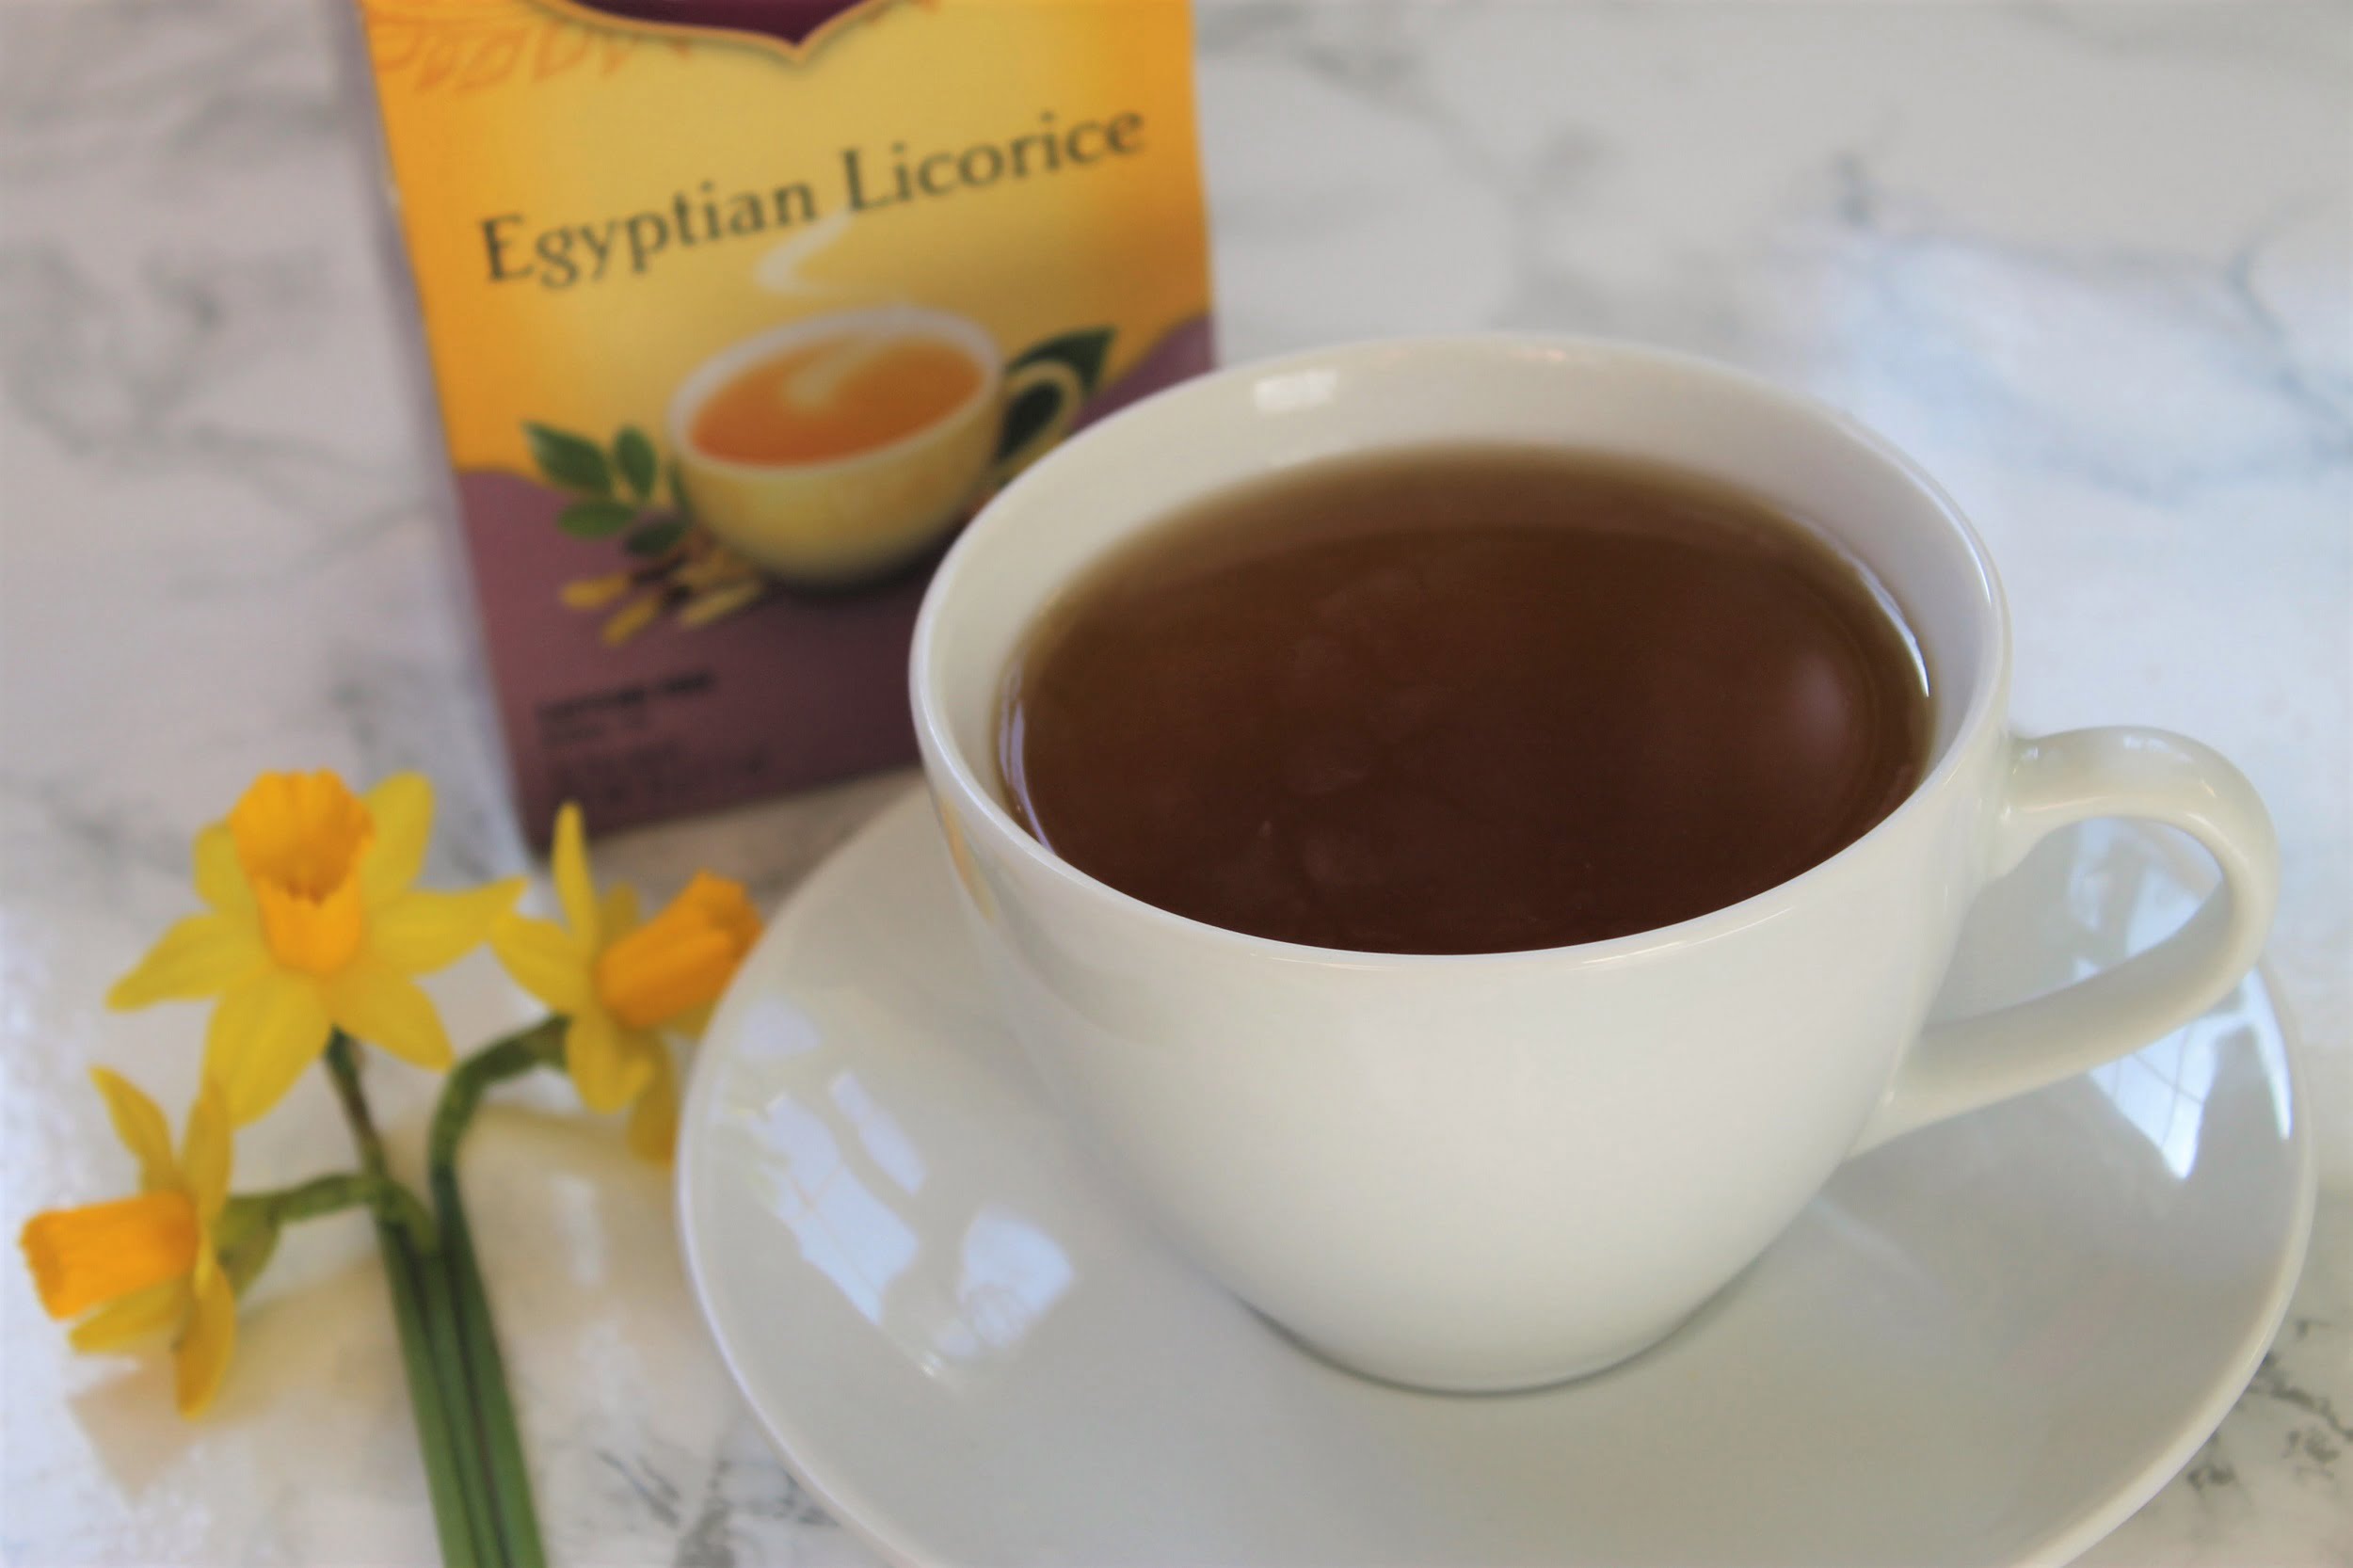 yogi tea egyptian licorice in white teacup